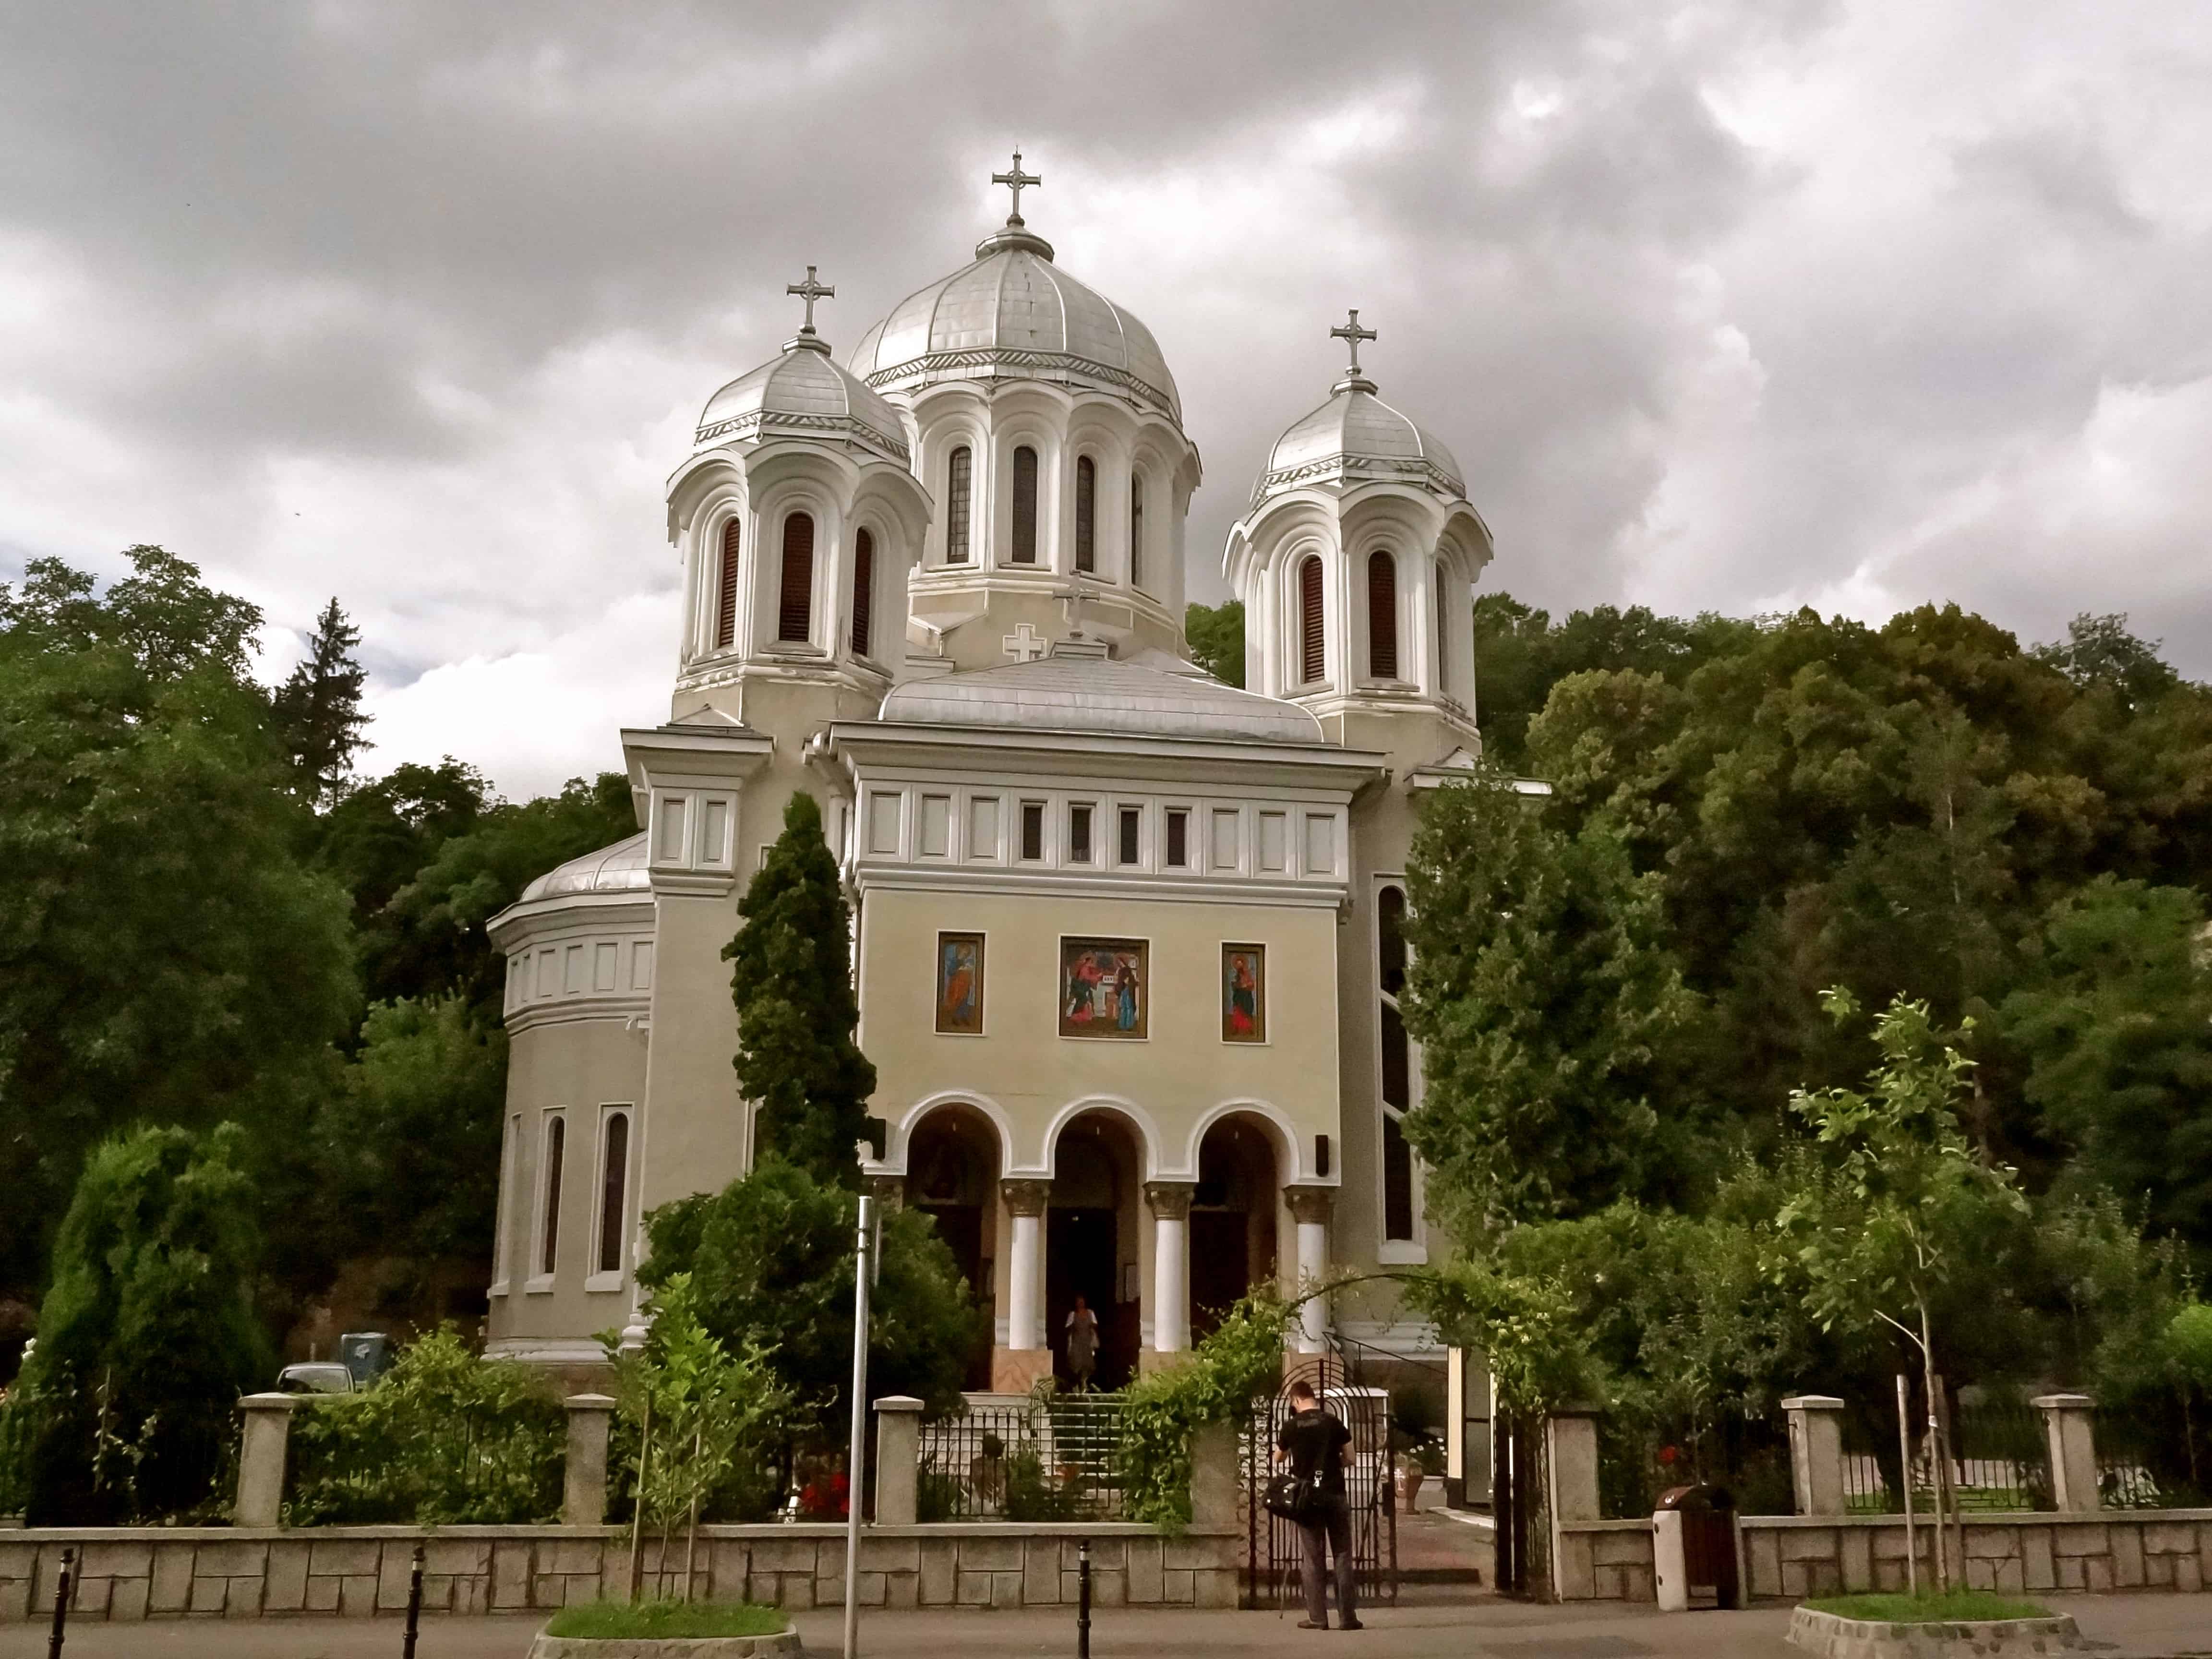 Romania churches, Romanian architecture